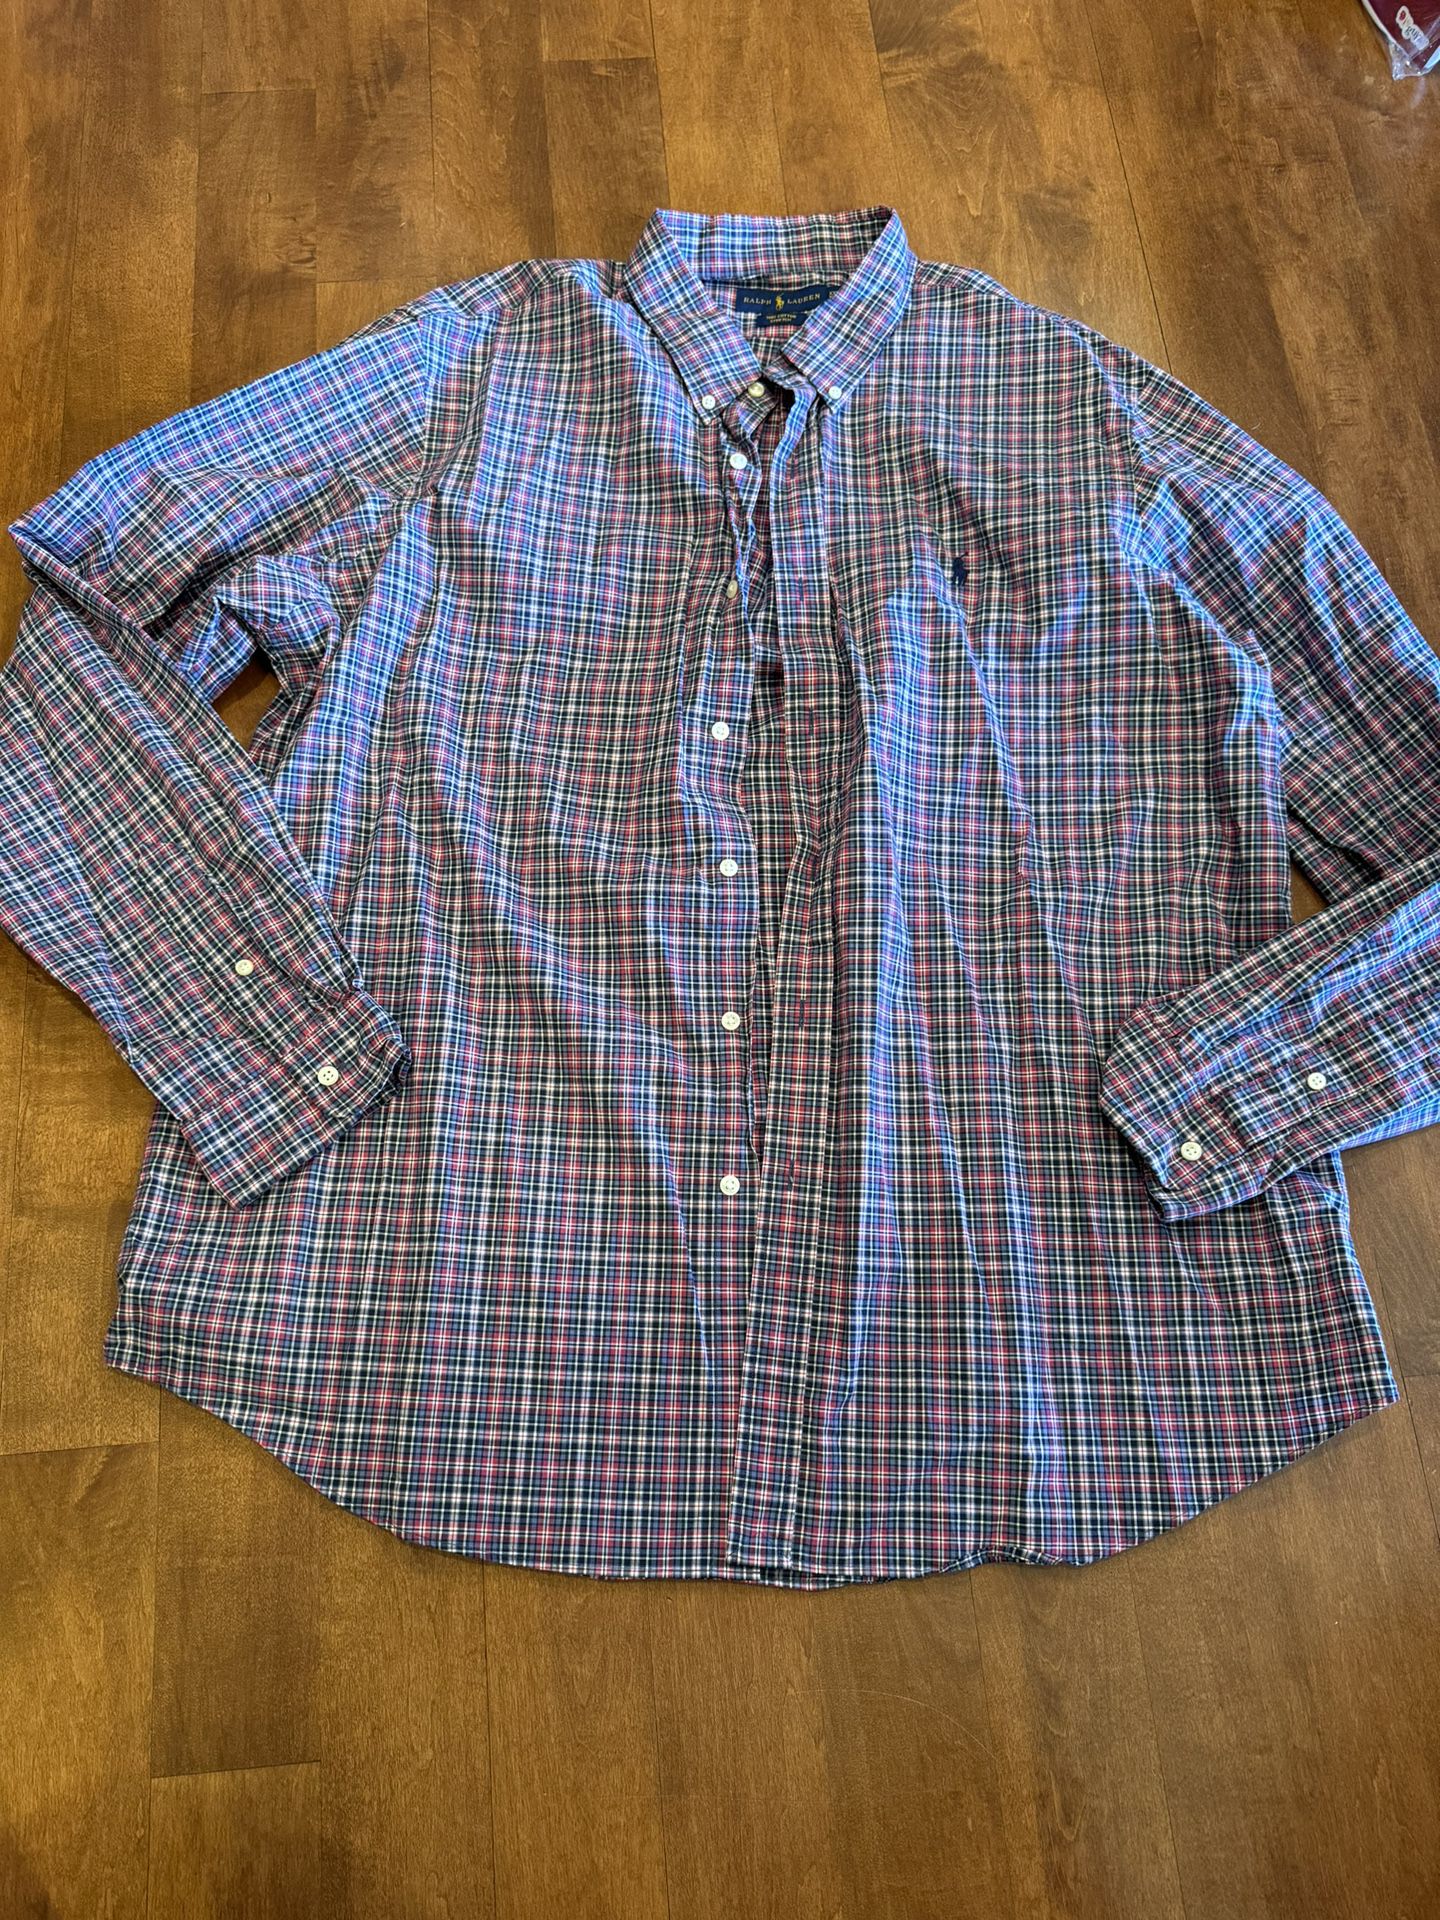 Men’s Ralph Lauren, Dress Shirt, Shipping Available